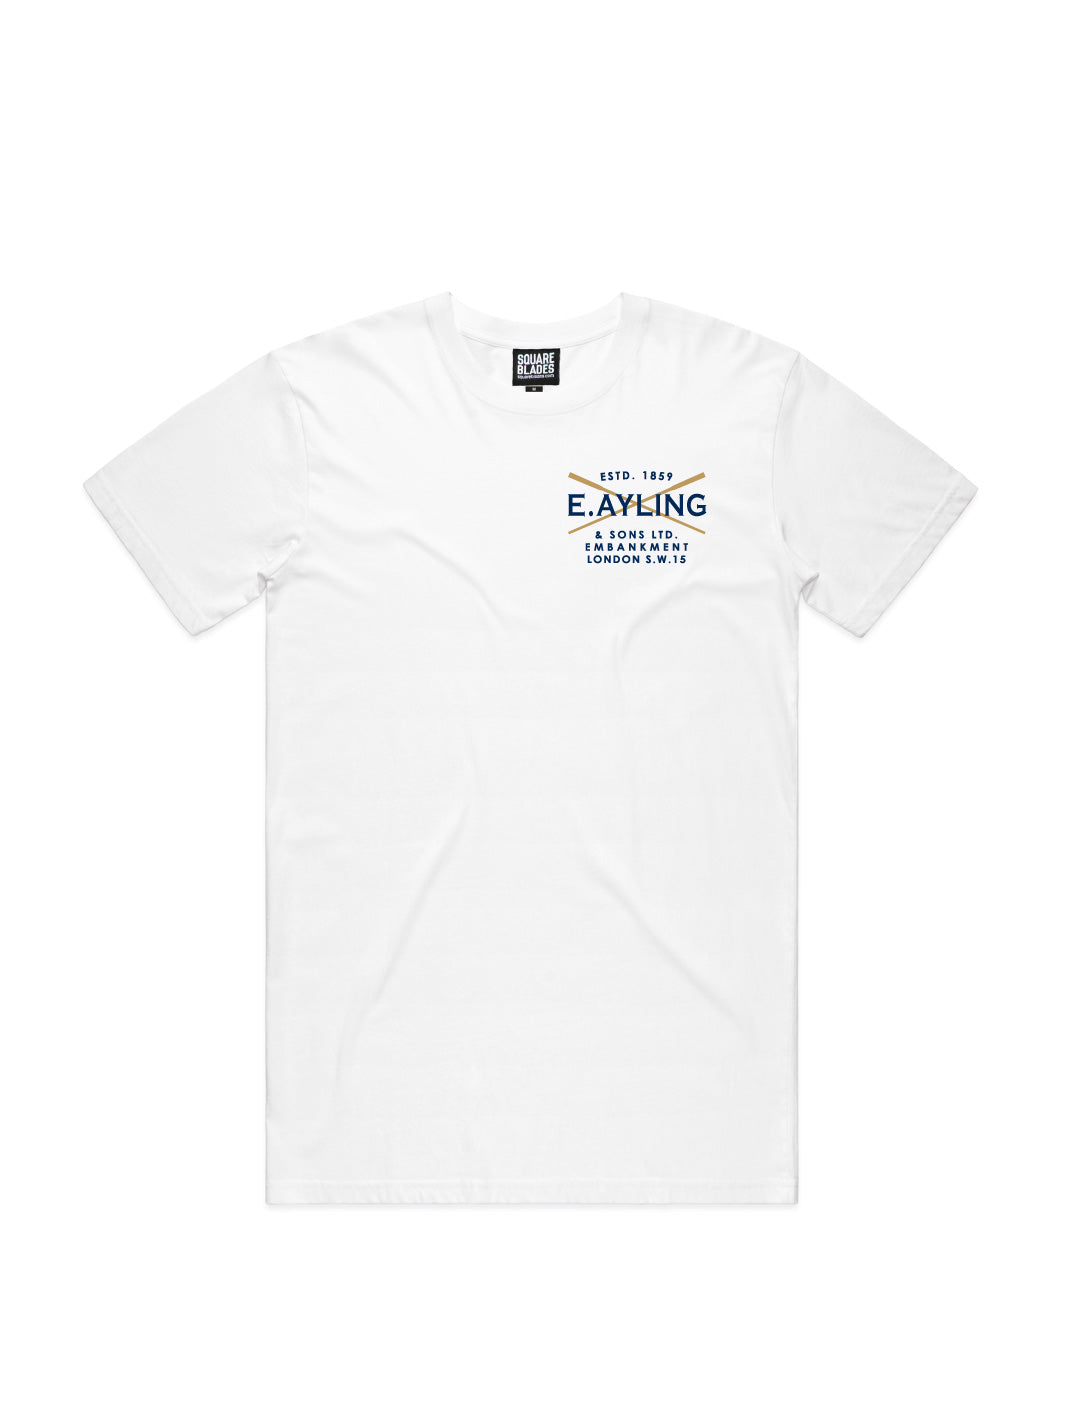 E. Ayling Rowing T-Shirt